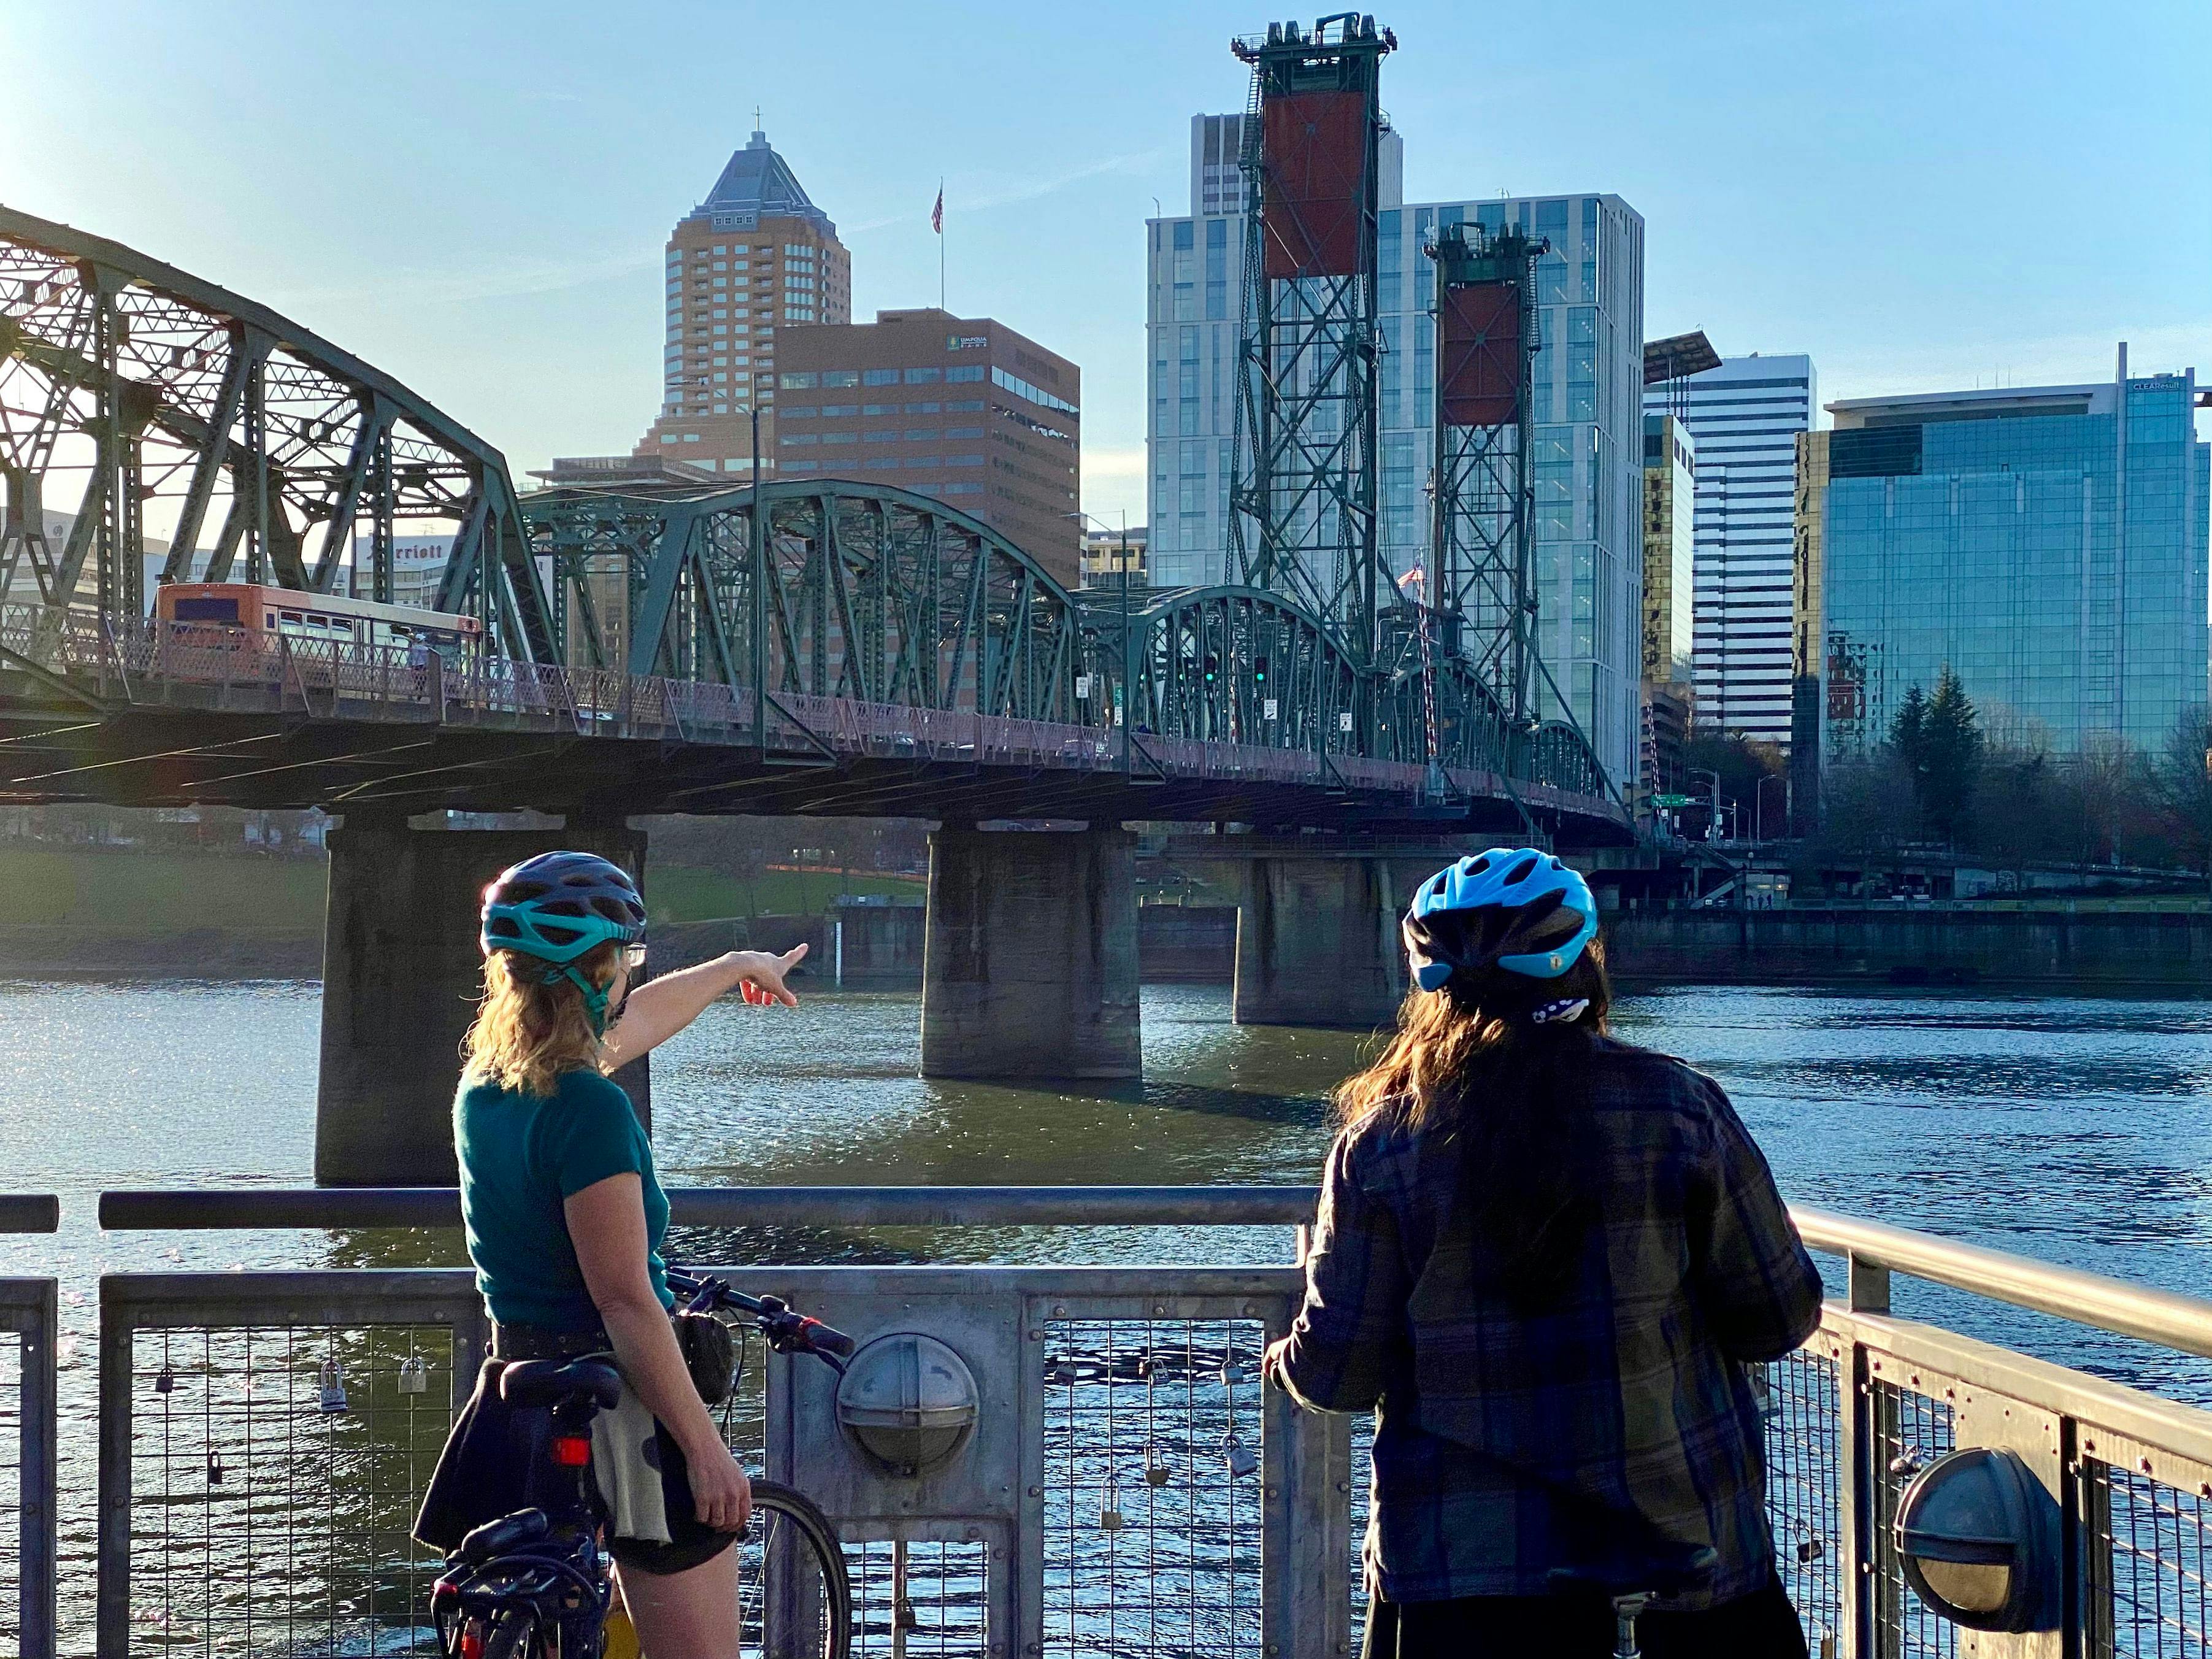 Portland parks and bridges 3-hour bike tour